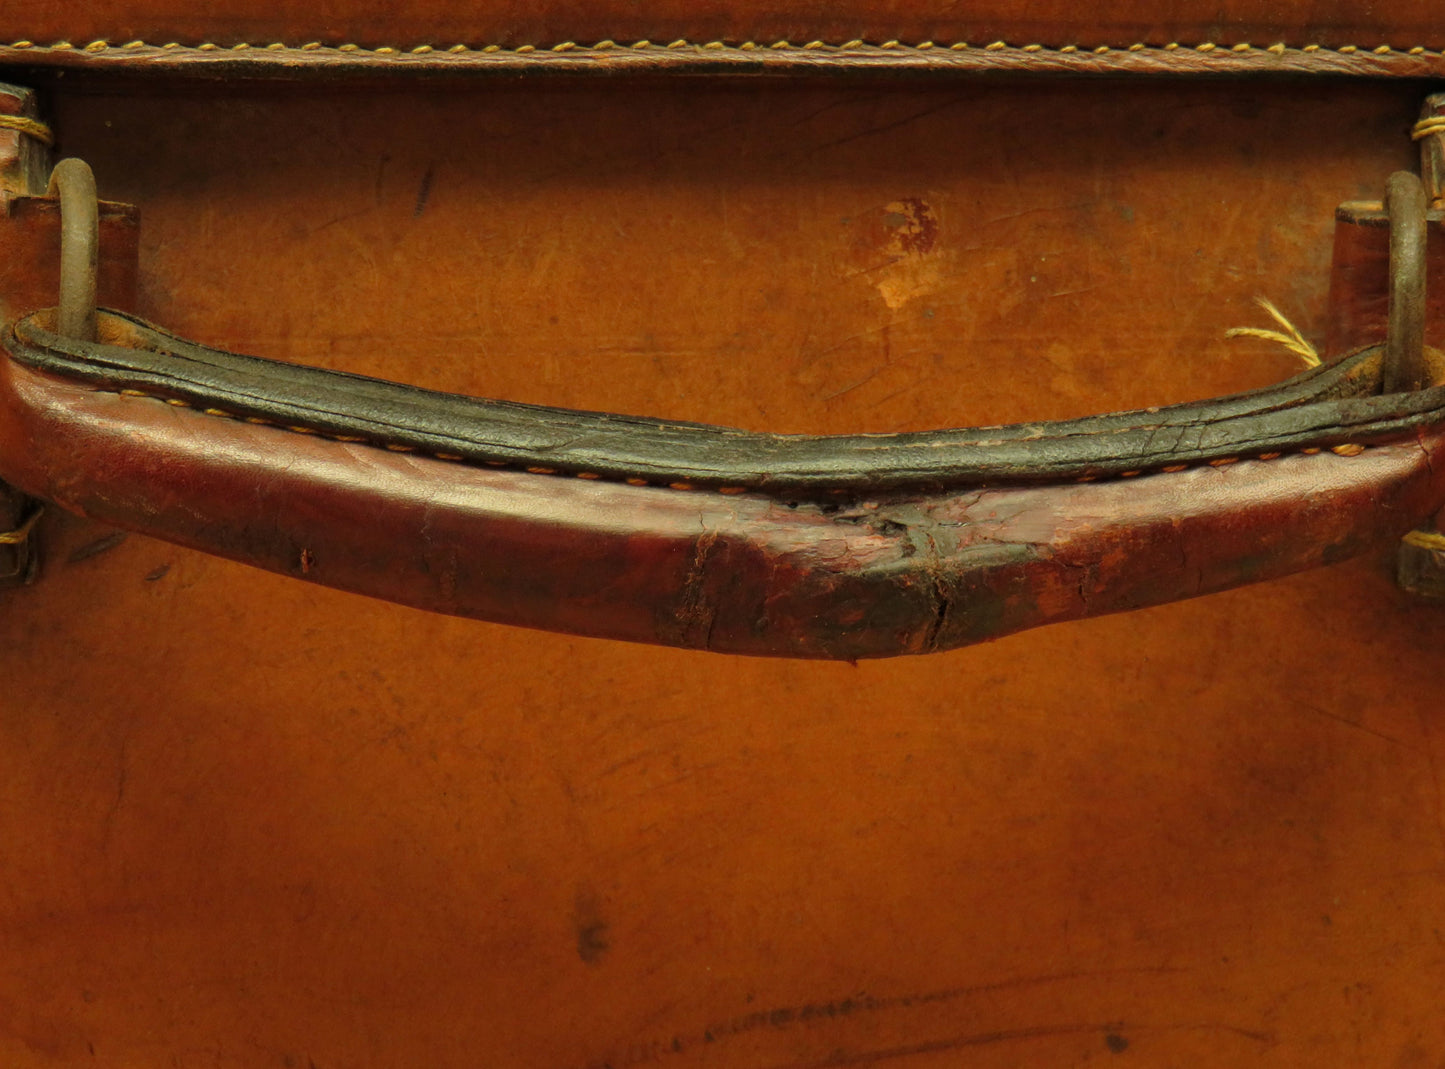 Leather Portmanteau Expanding Suitcase